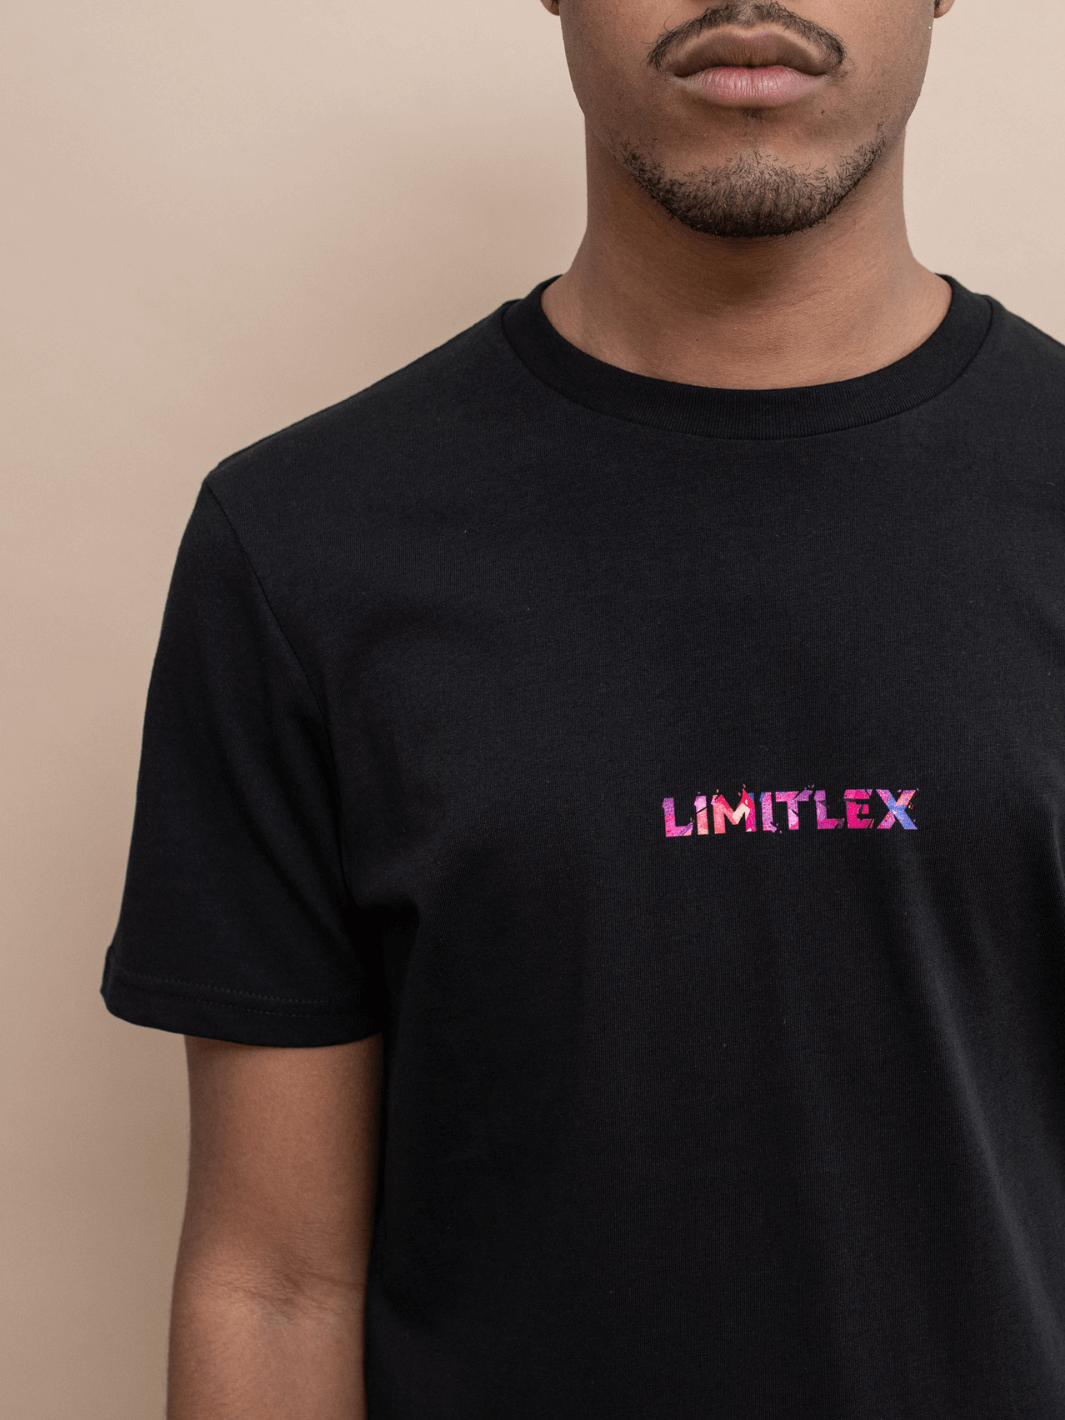 Zoom t-shirt essential nera con scritta Limitlex sul petto.